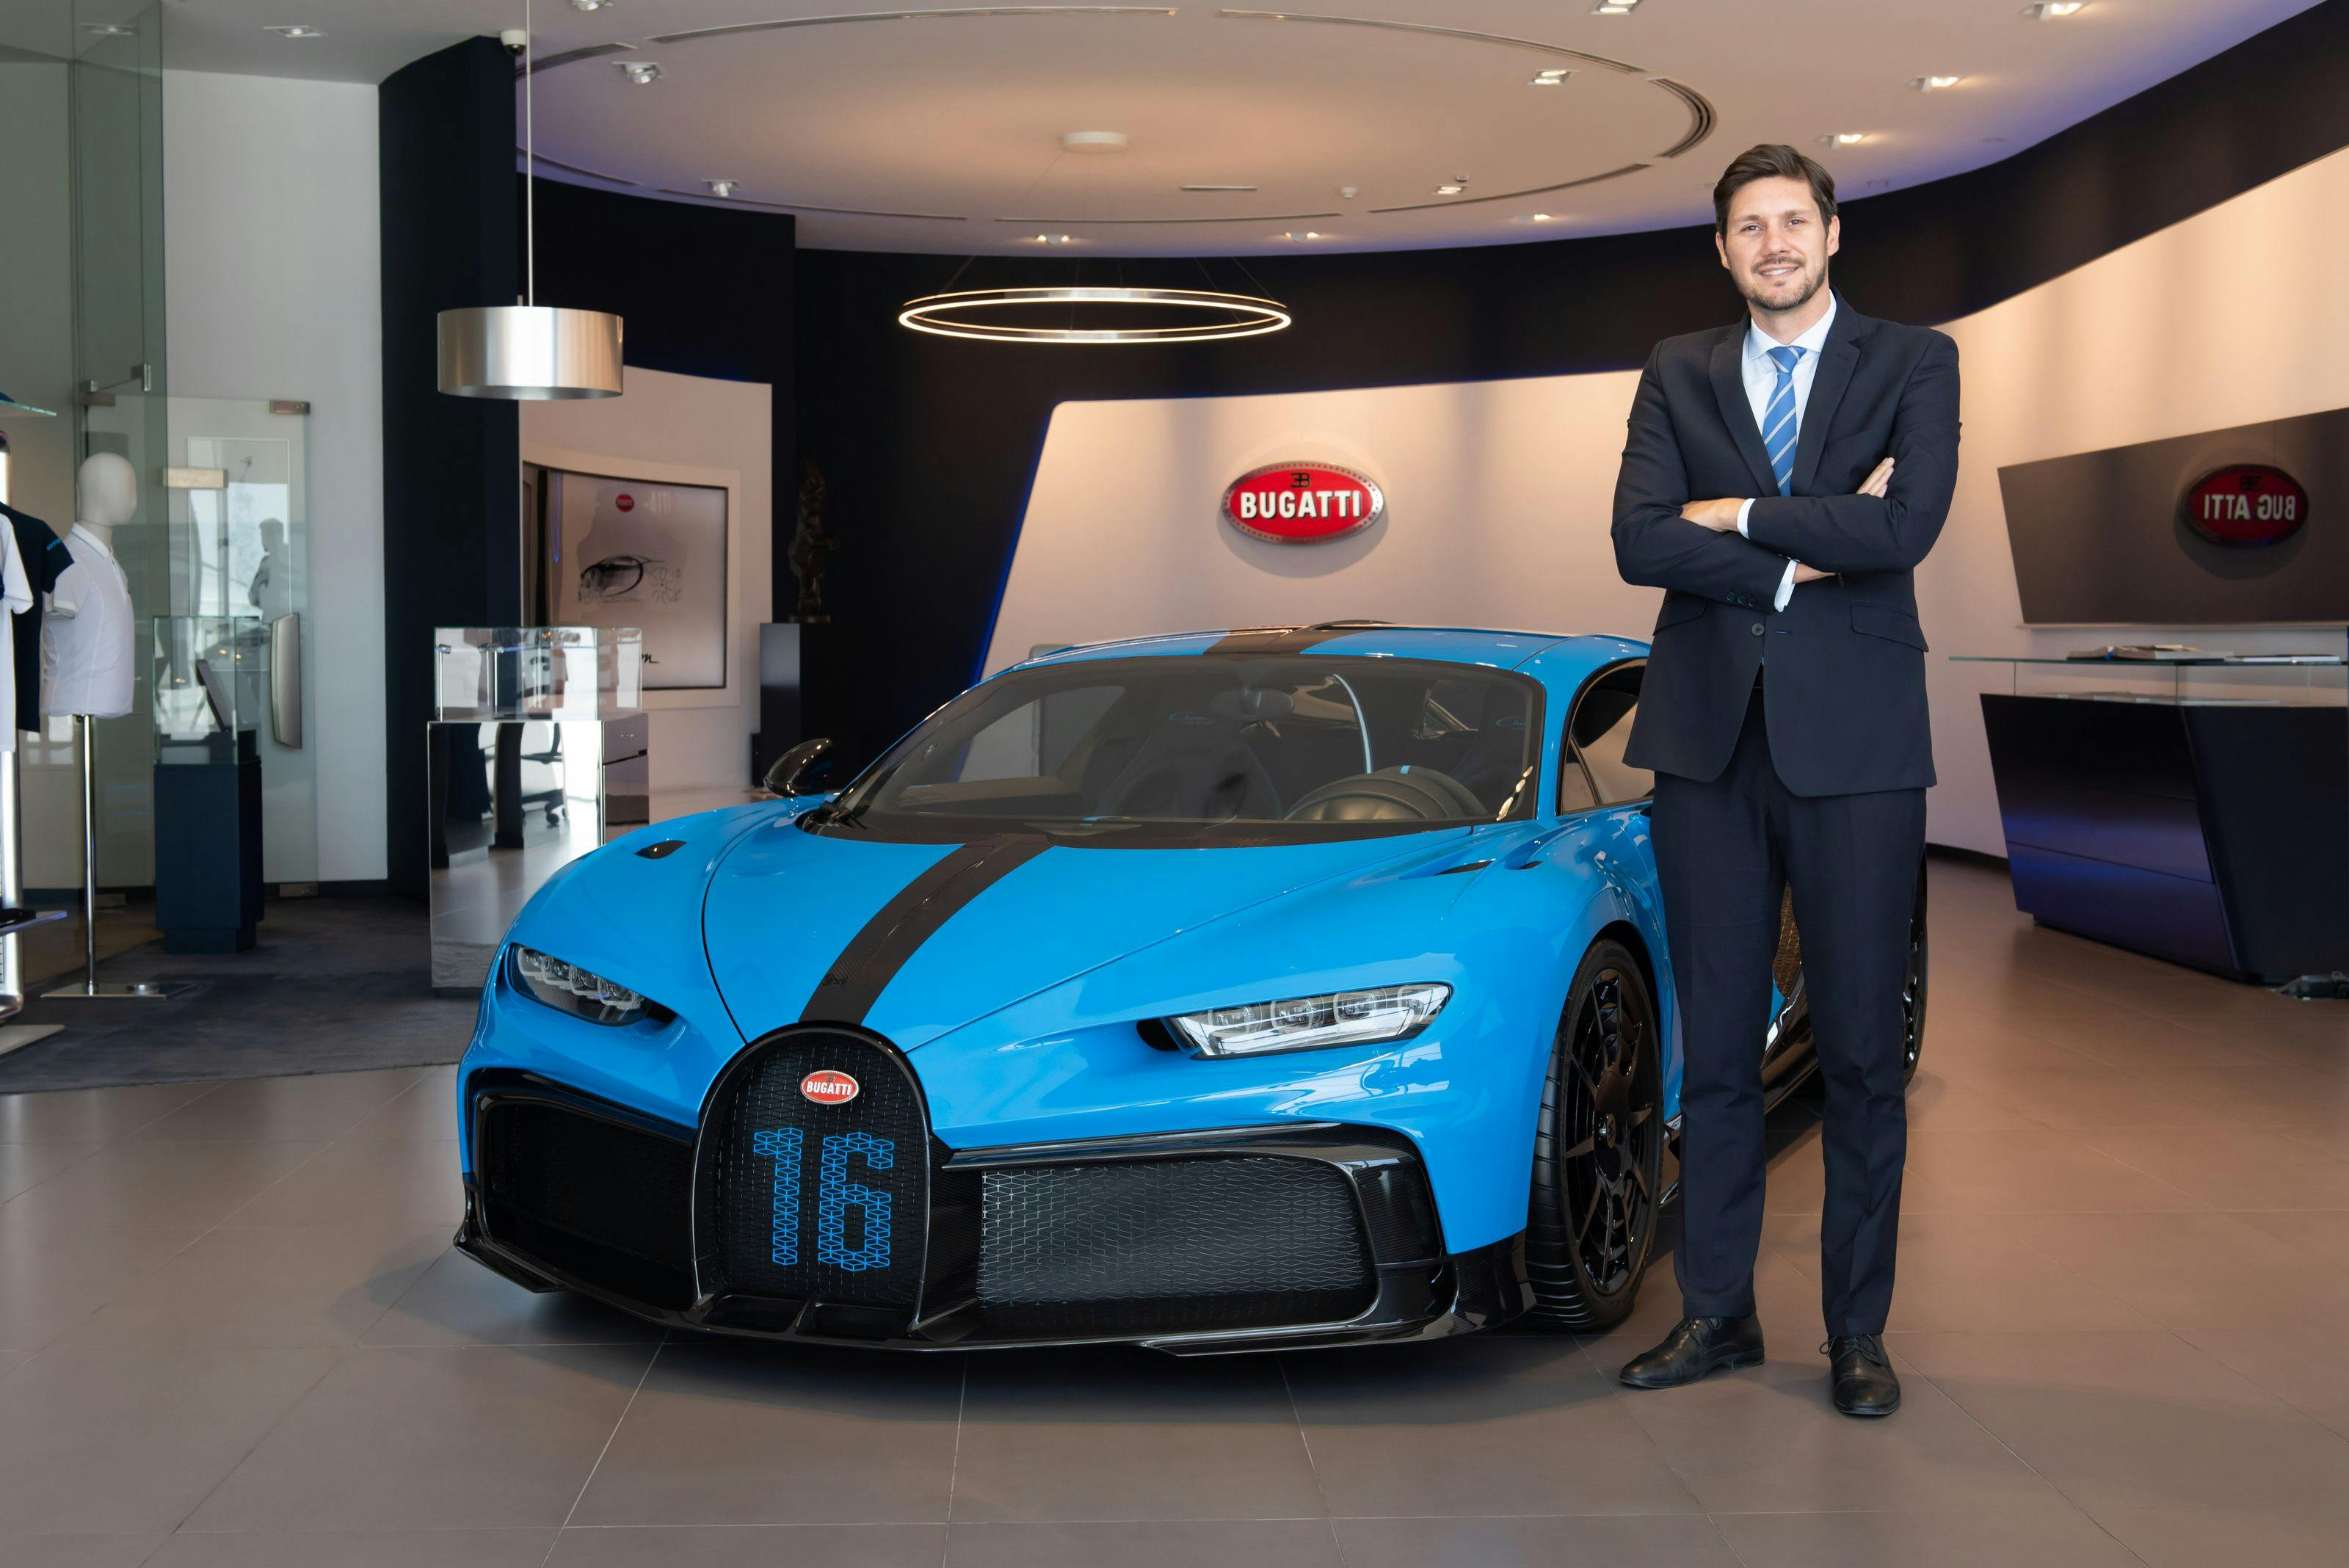 Le télétravail chez Bugatti – Kostas Psarris et la région MEA